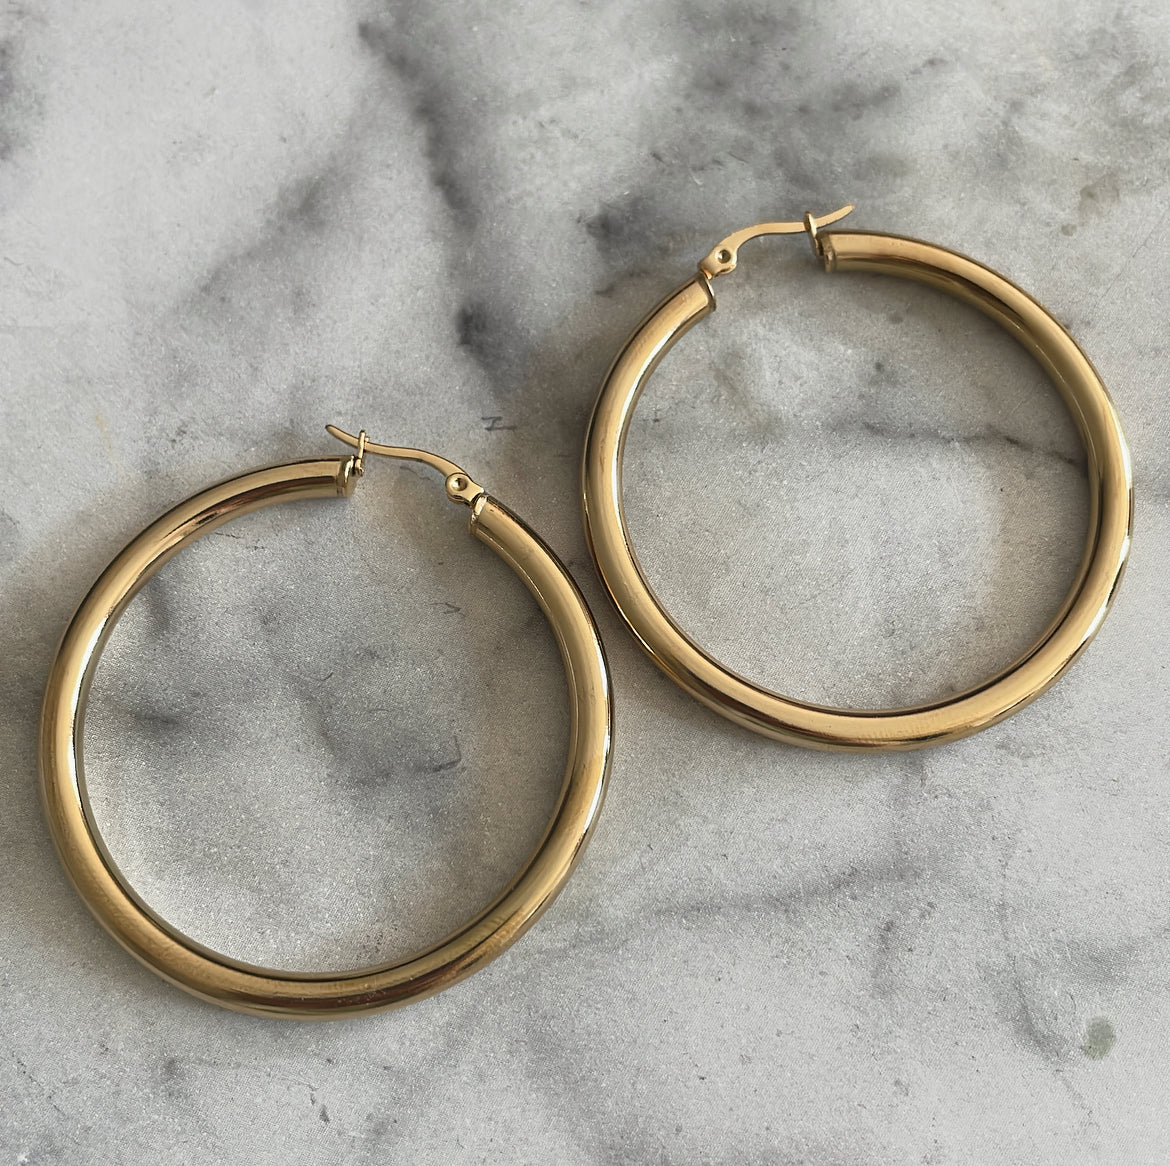 'GOLDEN HOUR' earrings